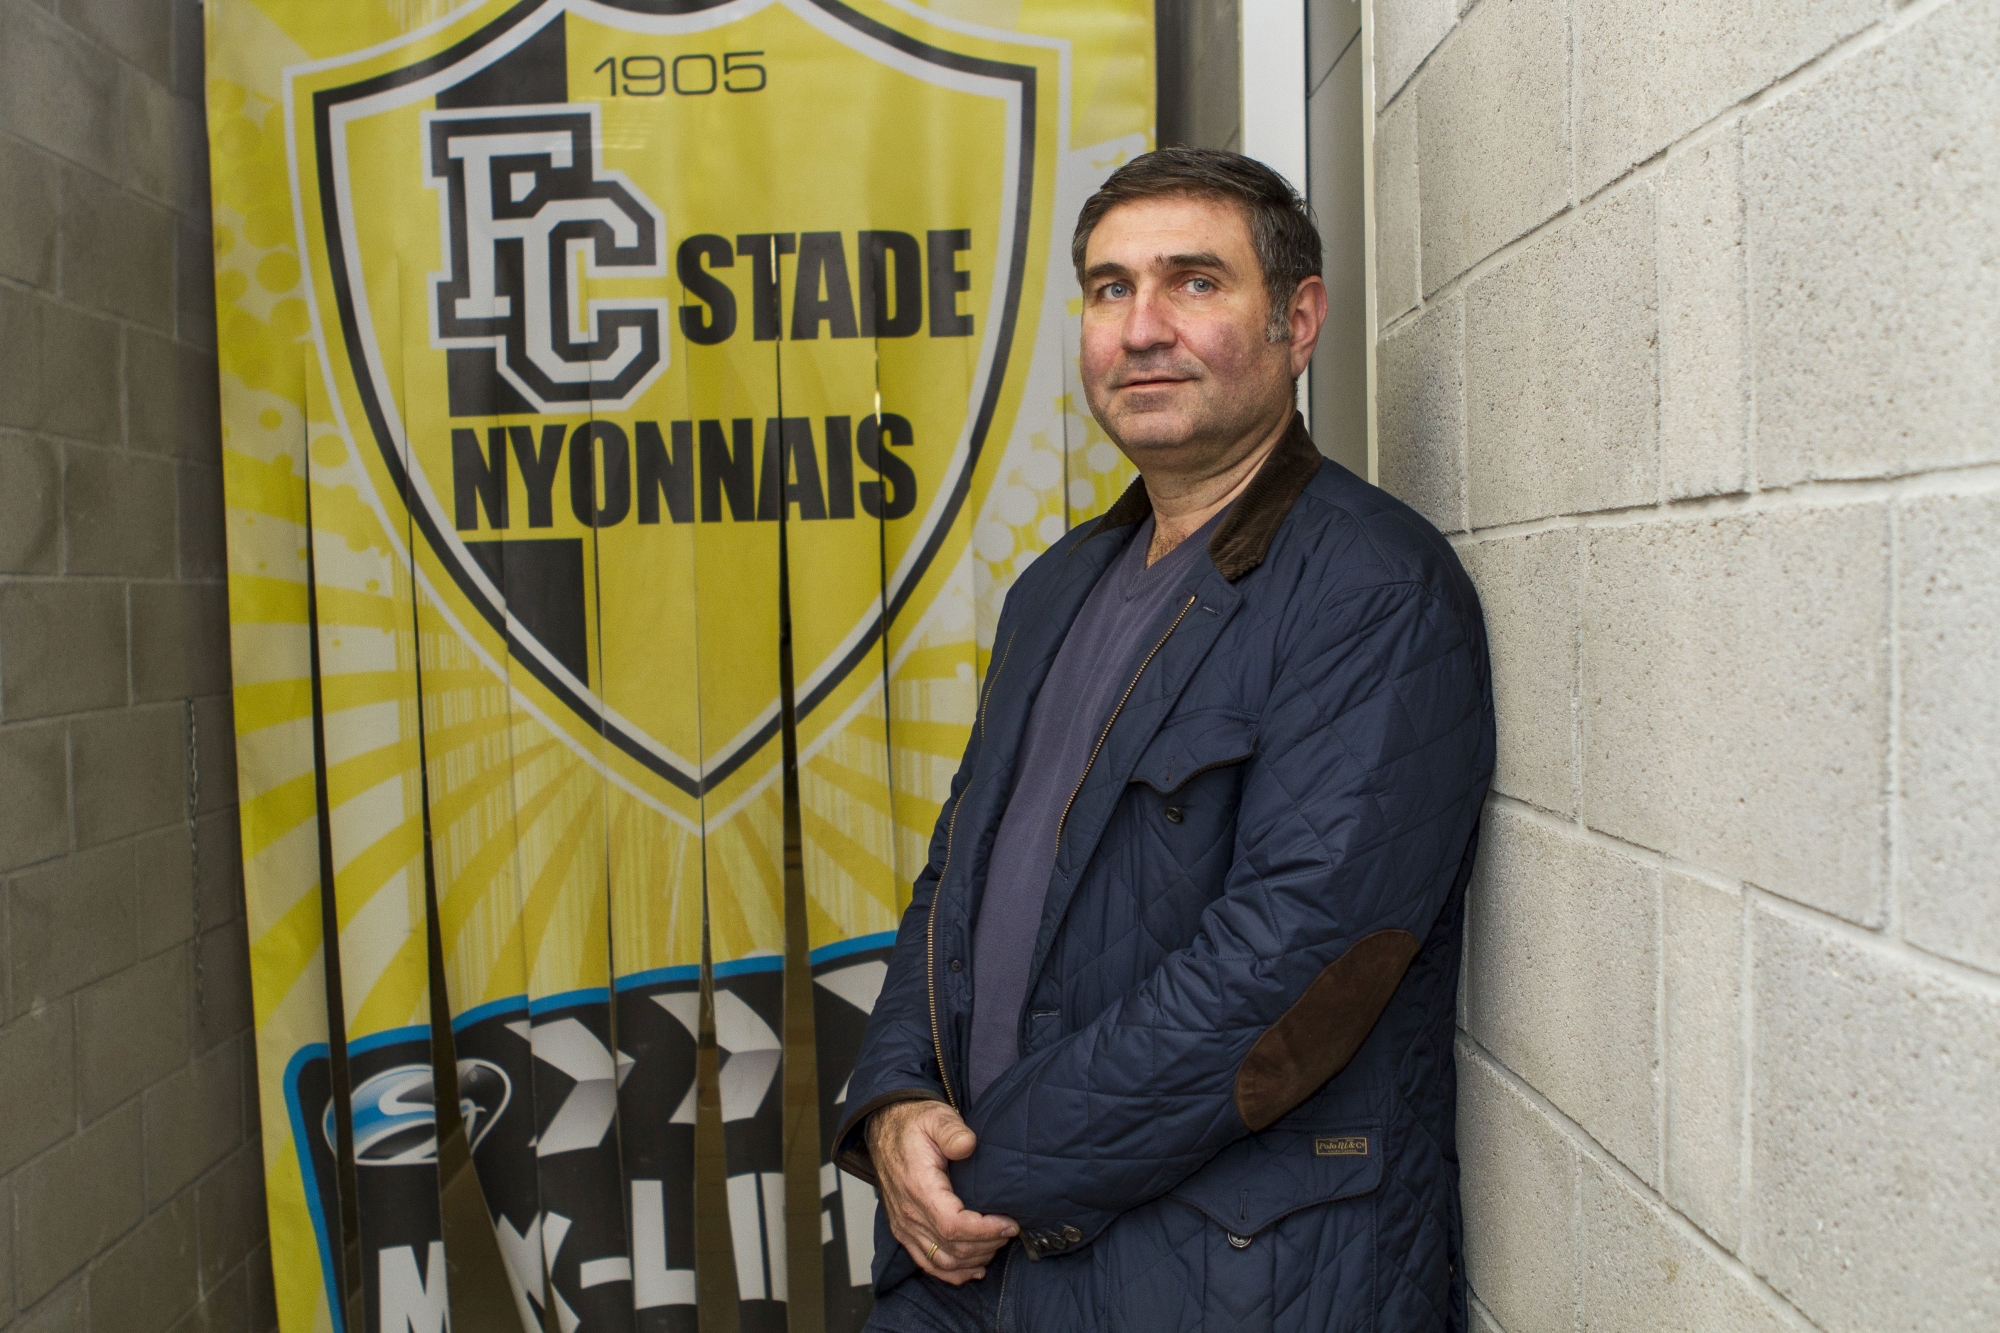 Portrait de Varujan Symonov, le manager général du FC Stade Nyonnais. 
Centre sportif de Colovray, Nyon, jeudi 8 décembre 2016.